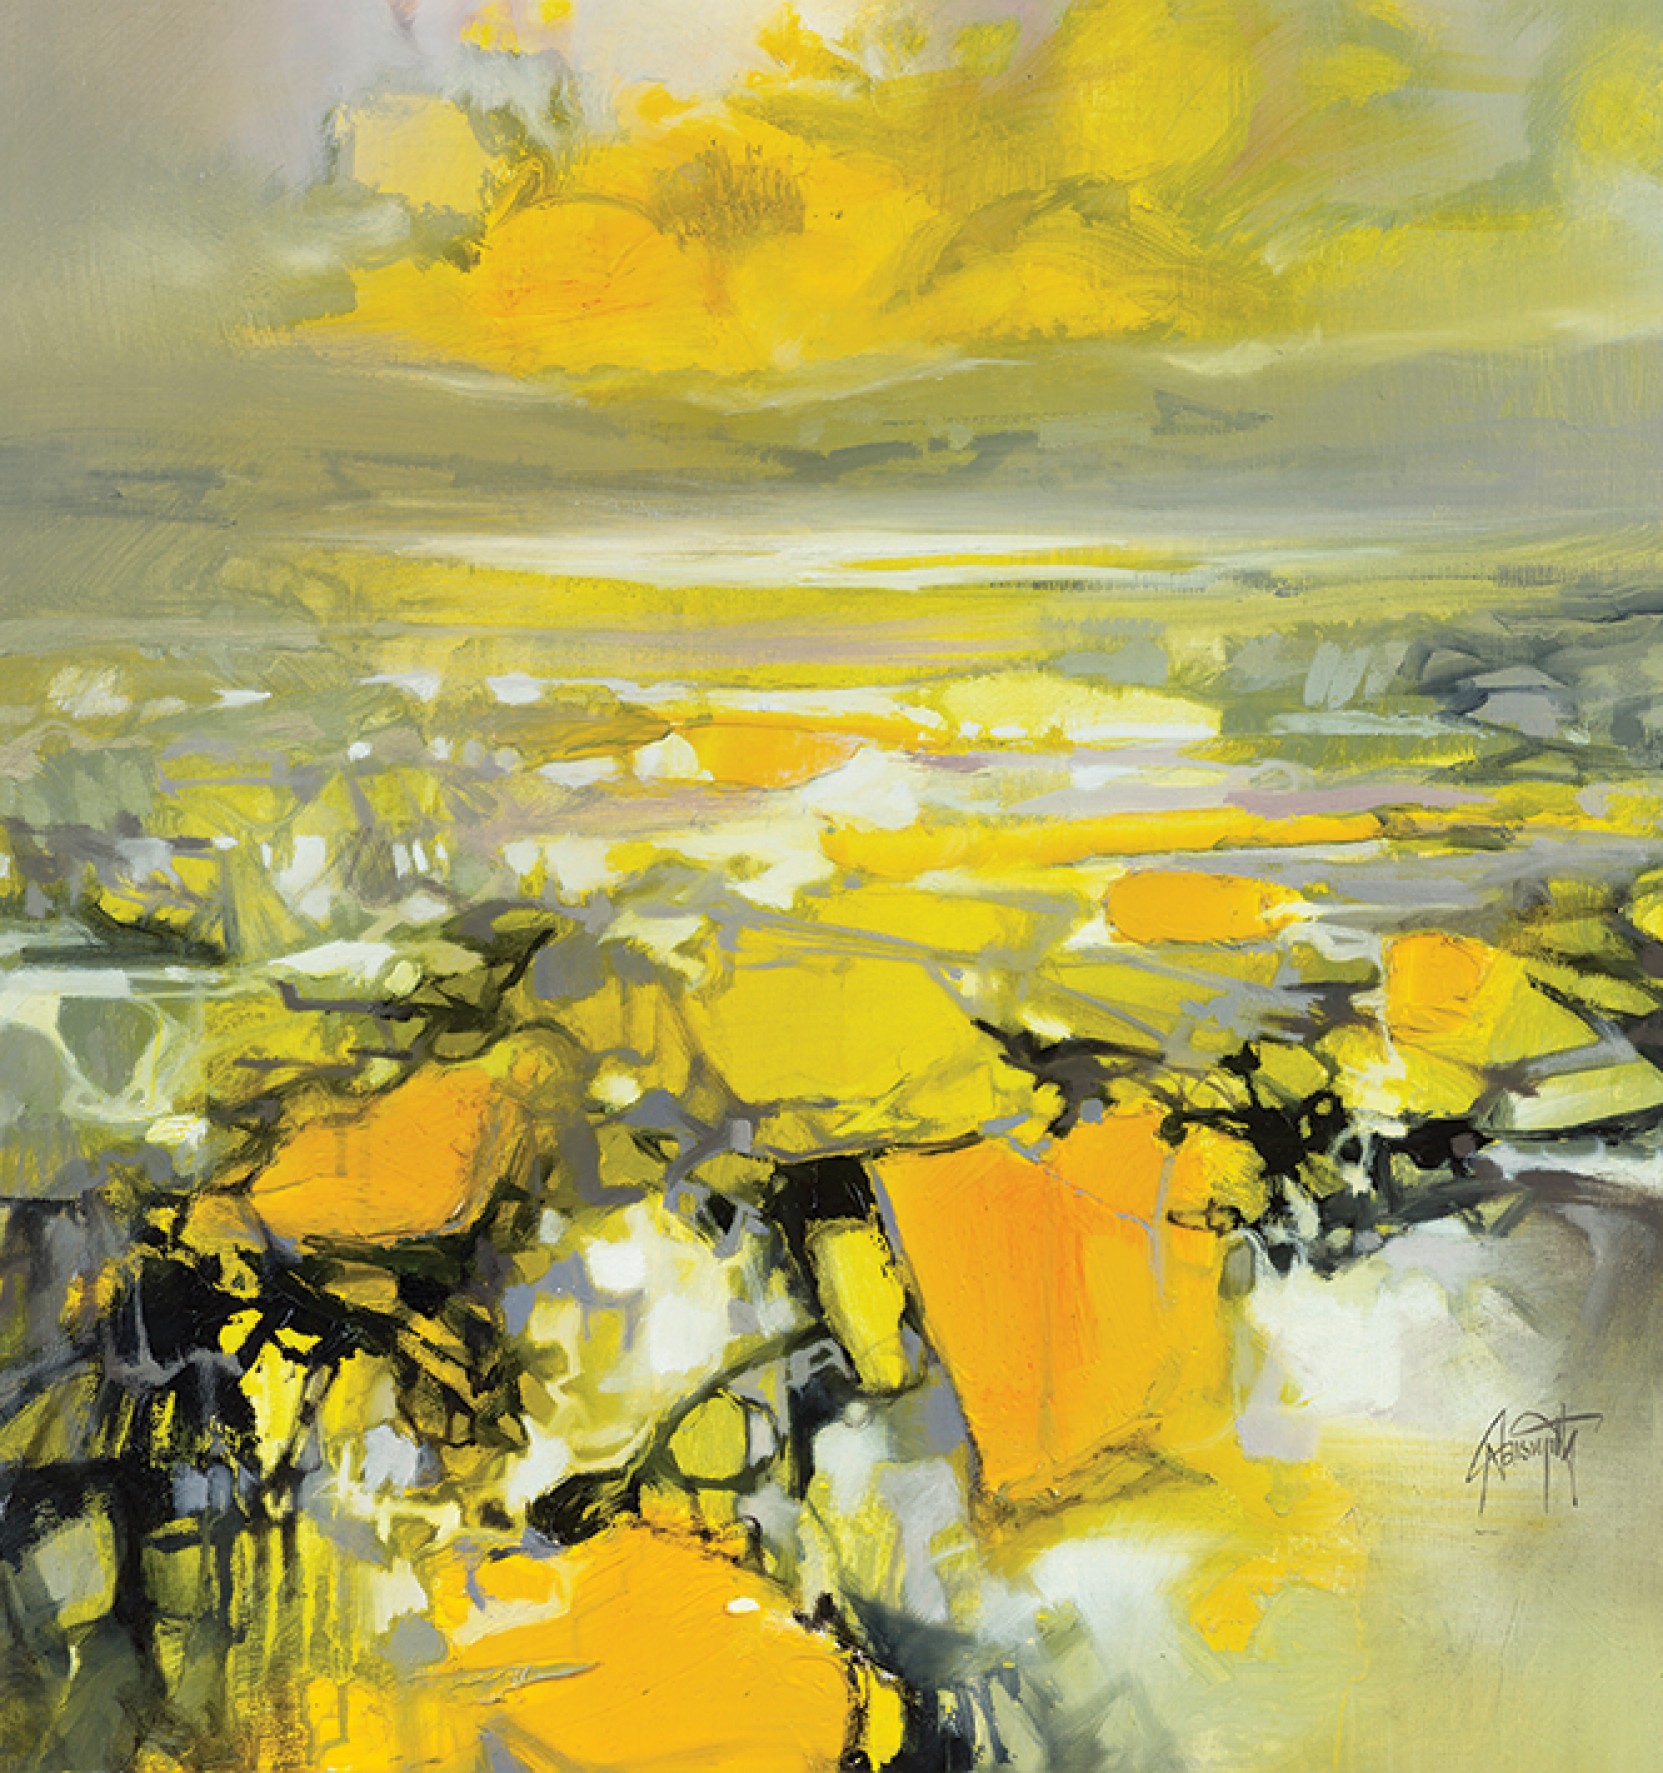 Yellow Matter 2 by Scott Naismith